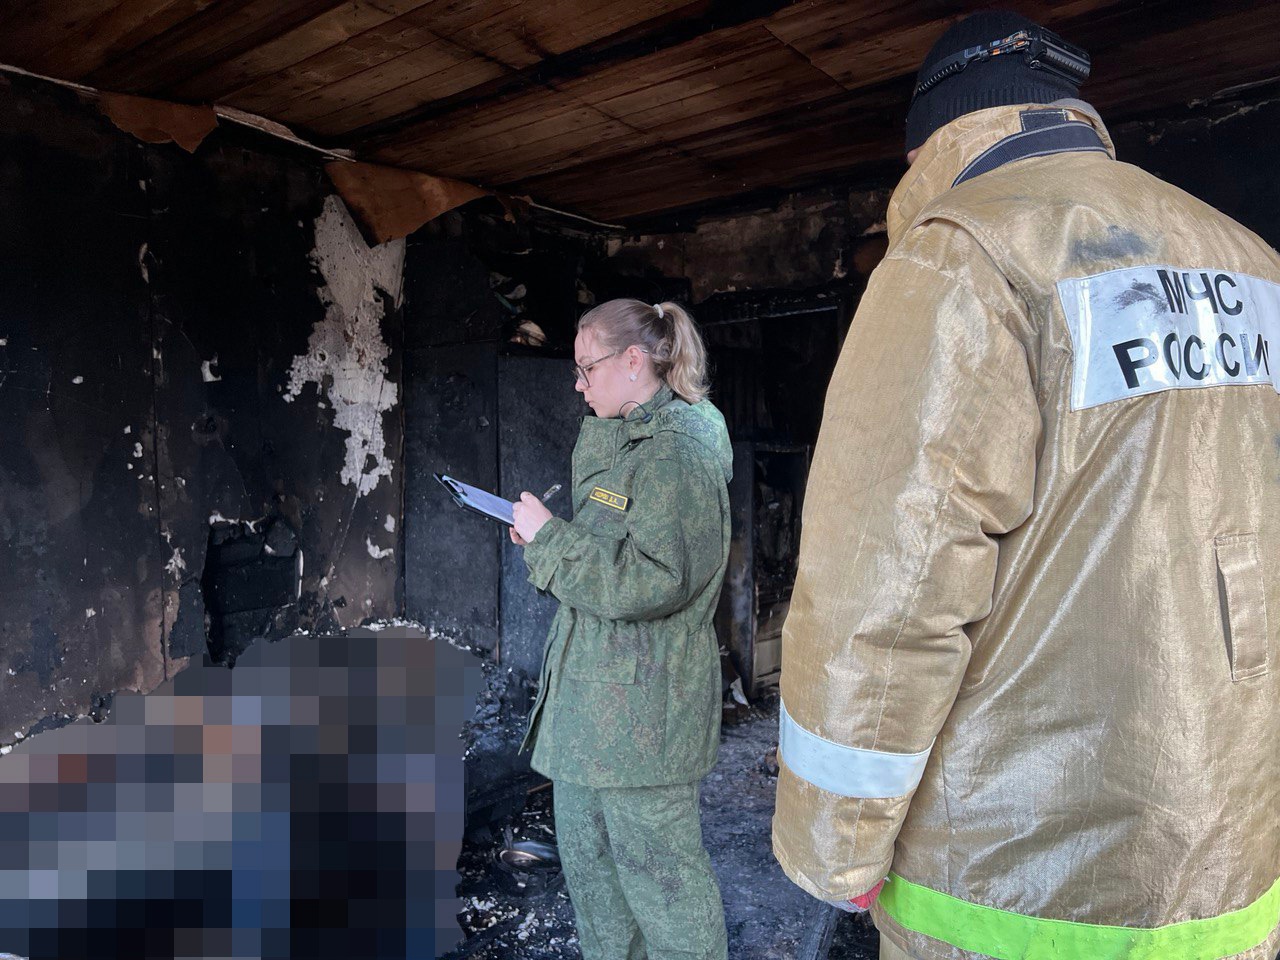 В пожаре на Некрасова погибла семейная пара